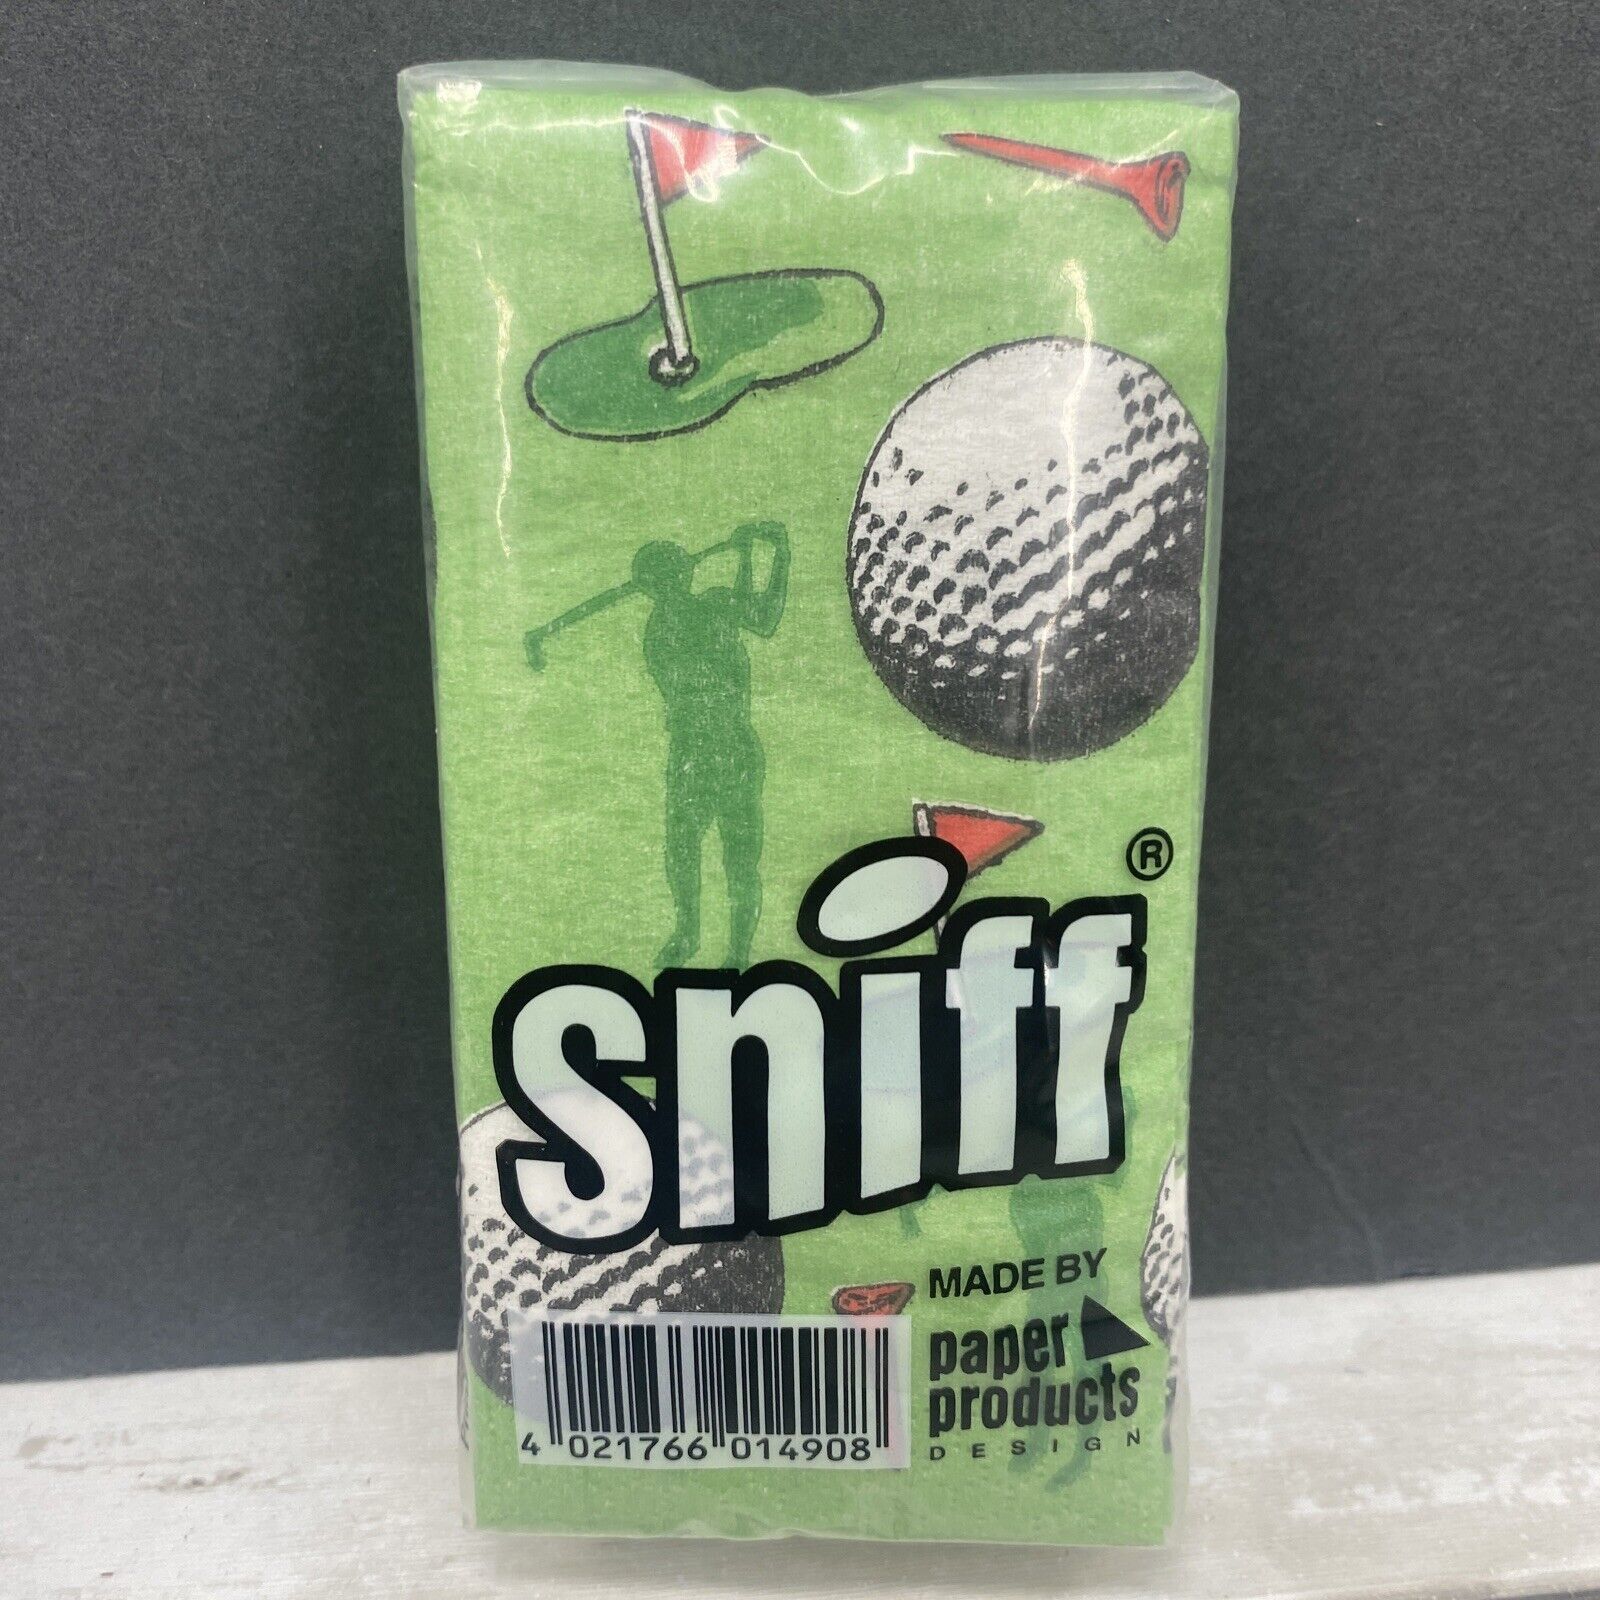  GOLF Novelty Golfer Sniff Pocket Designer Tissues Golf Balls Tees Tissue Pack - $9.26